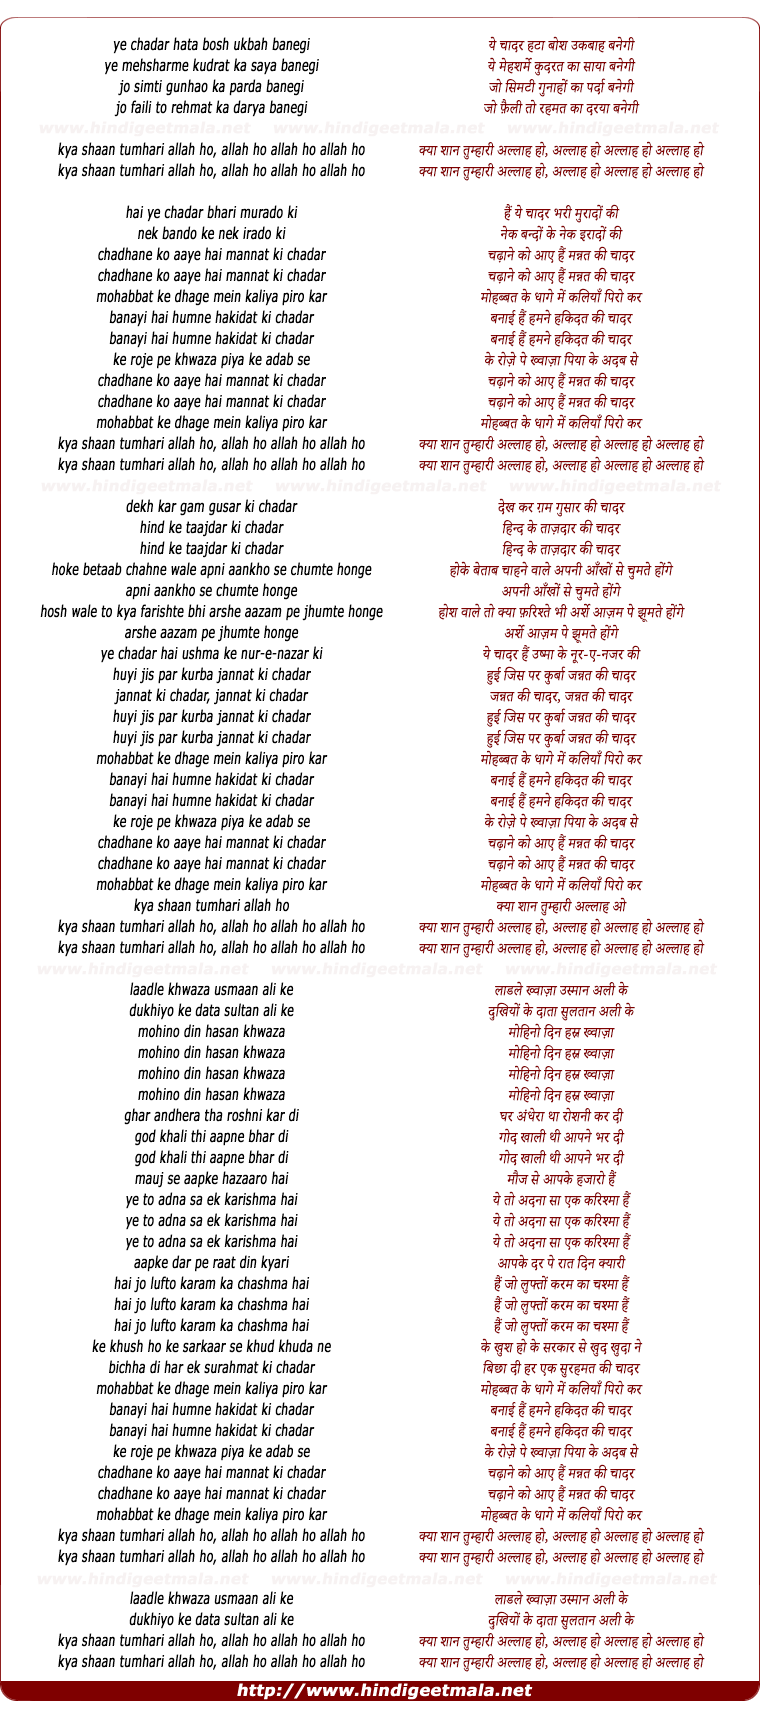 lyrics of song Mohabbat Ke Dhage Men Kaliyan Phiro Kar Banayi Hai Hamne